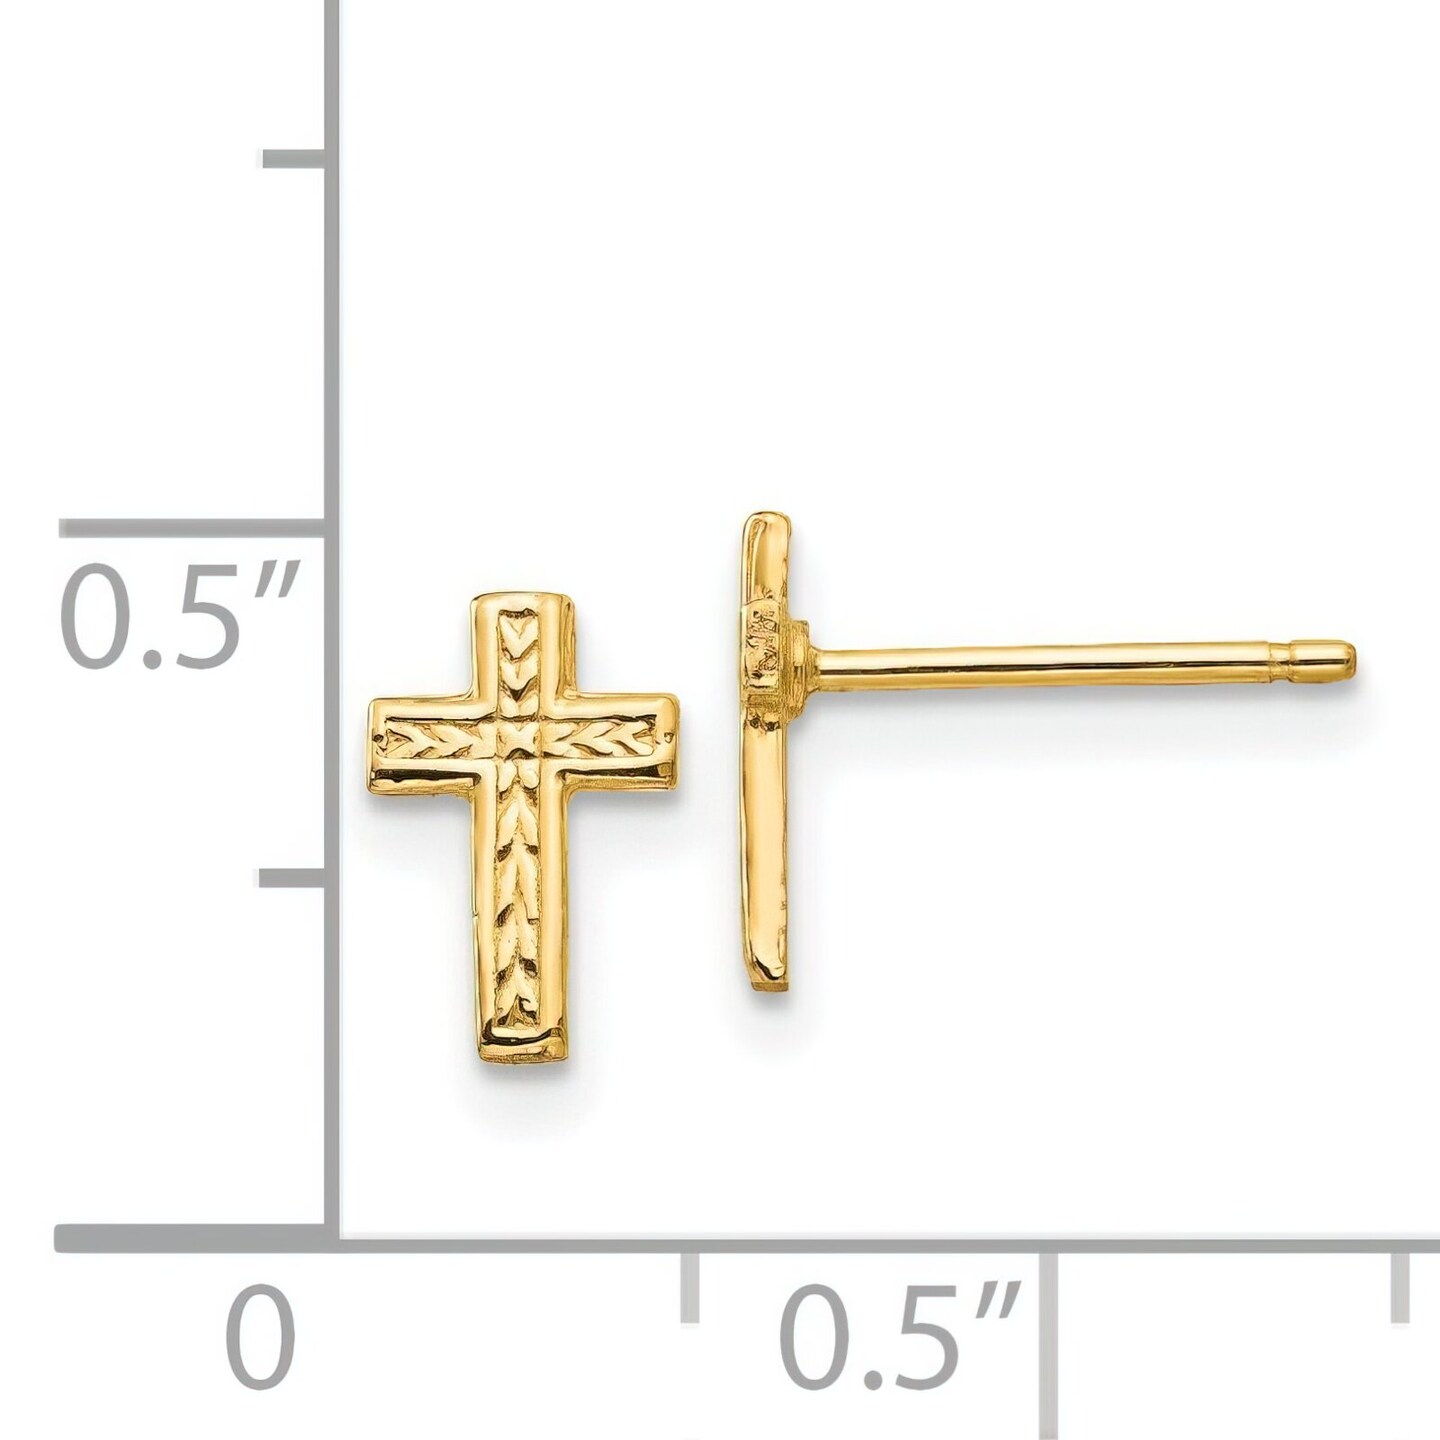 14K Yellow Gold Cross Post Earrings Earring Jewelry 9mm x 6mm